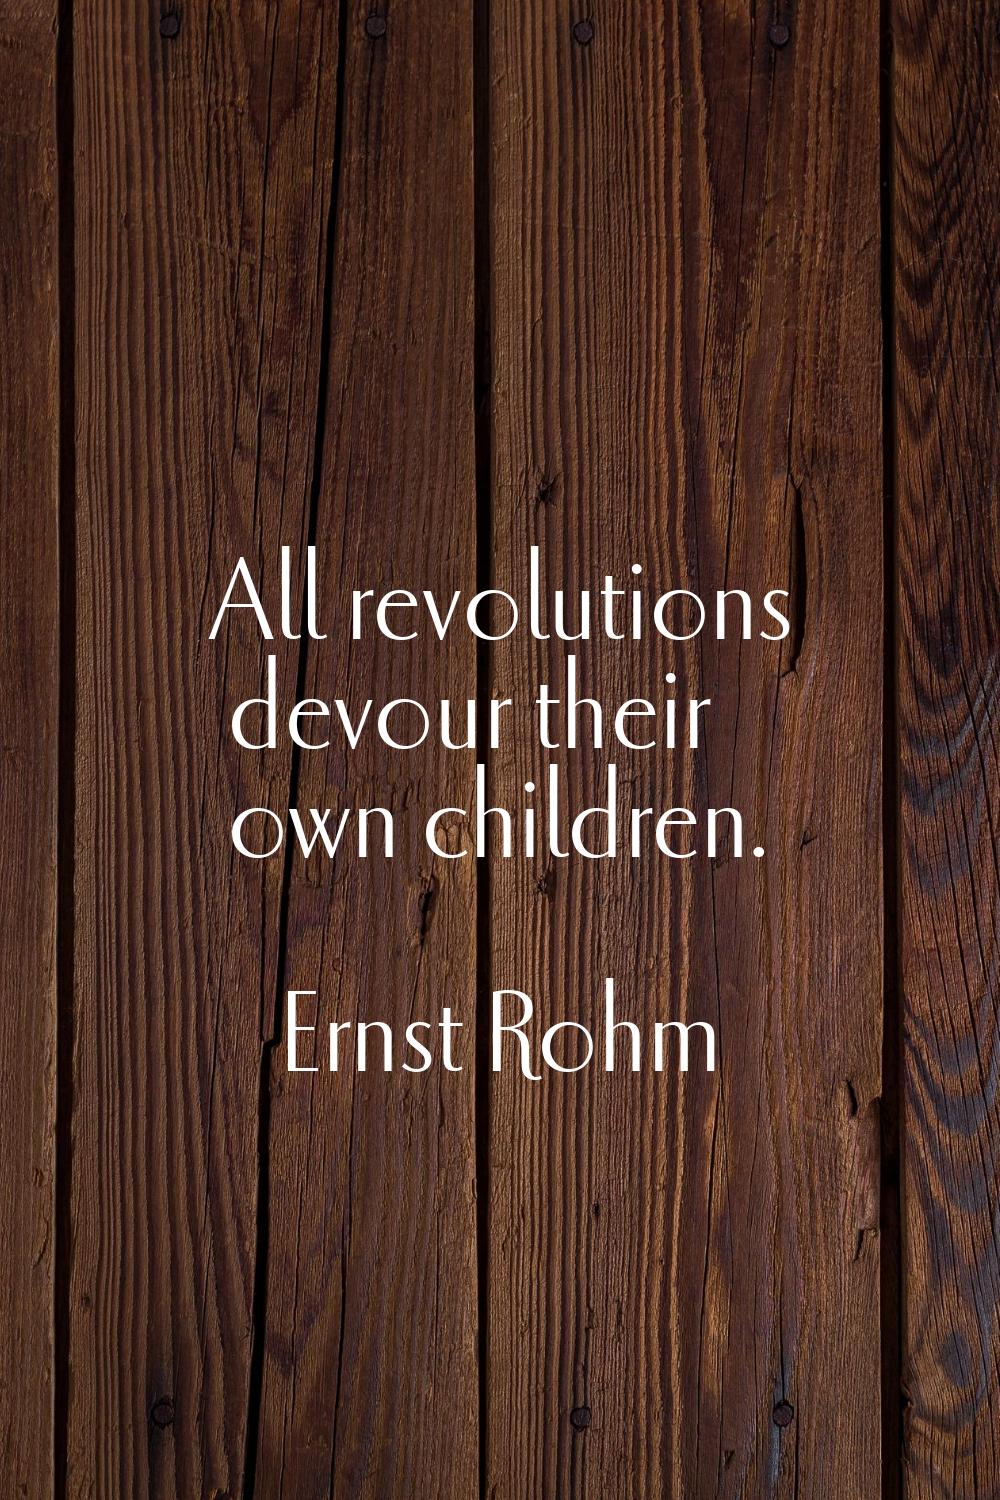 All revolutions devour their own children.